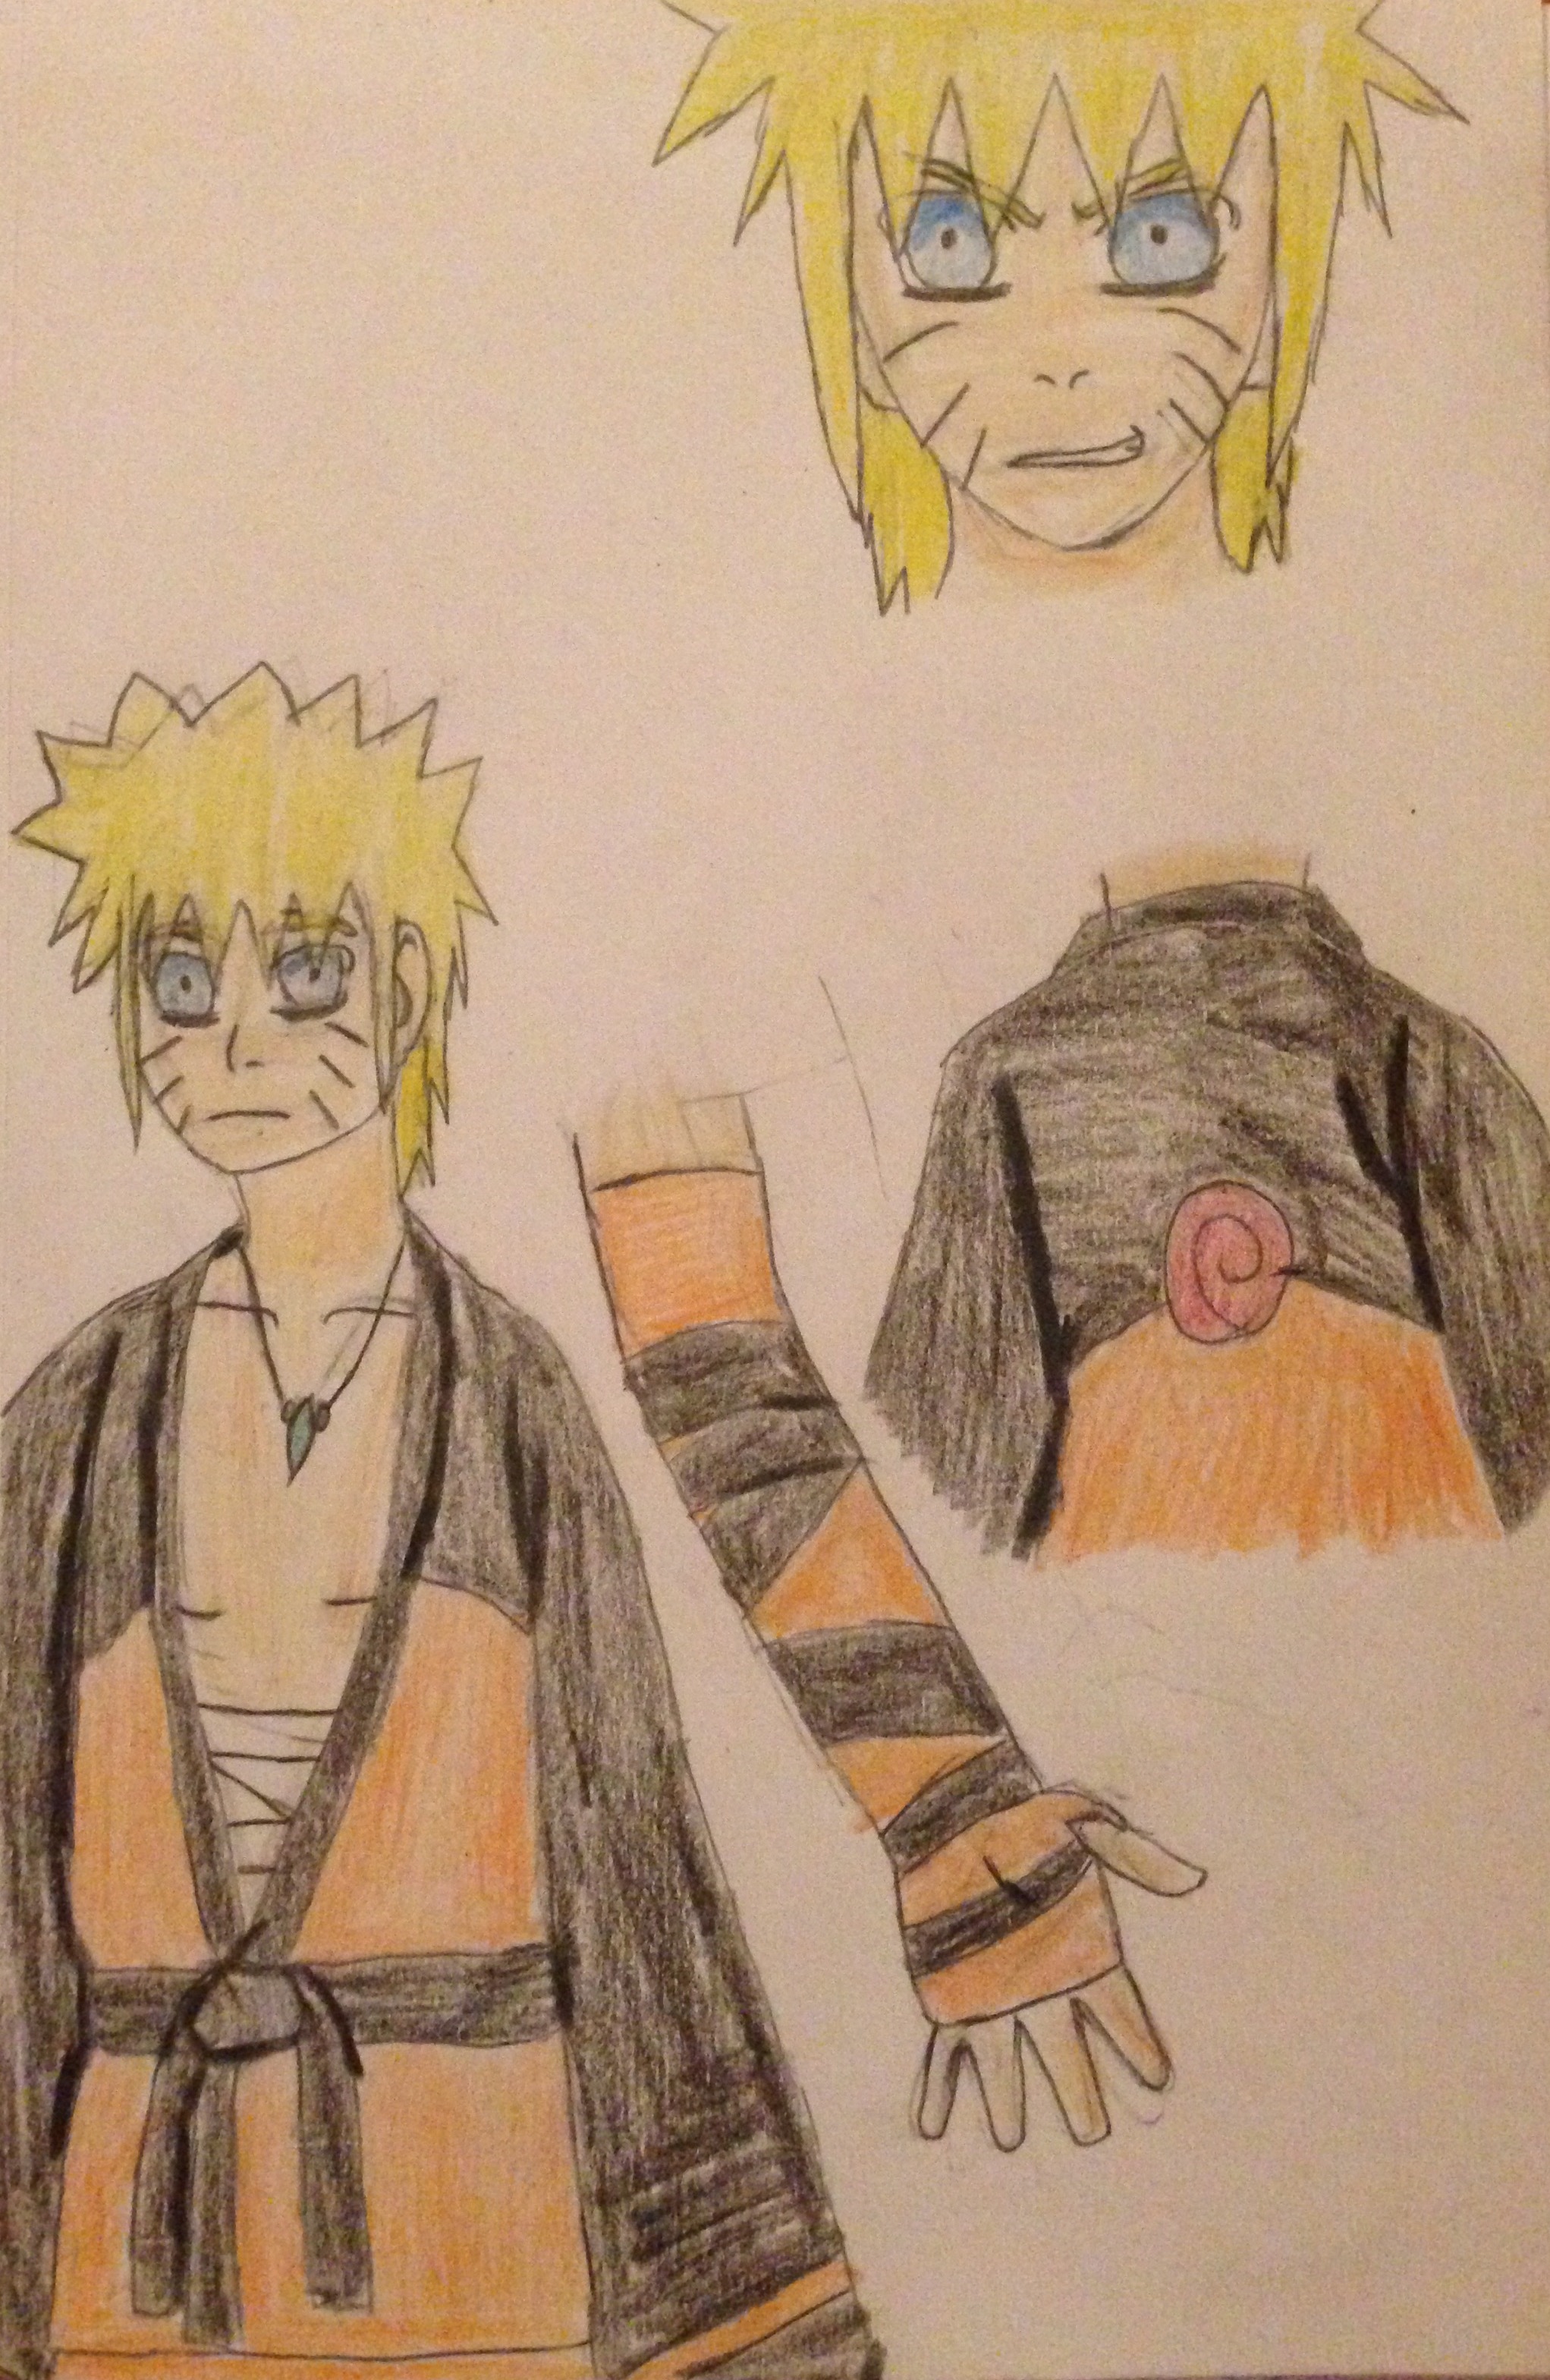 Draw Naruto Realistic/ Desenho Realista Do Naruto by WALLIS14 on DeviantArt